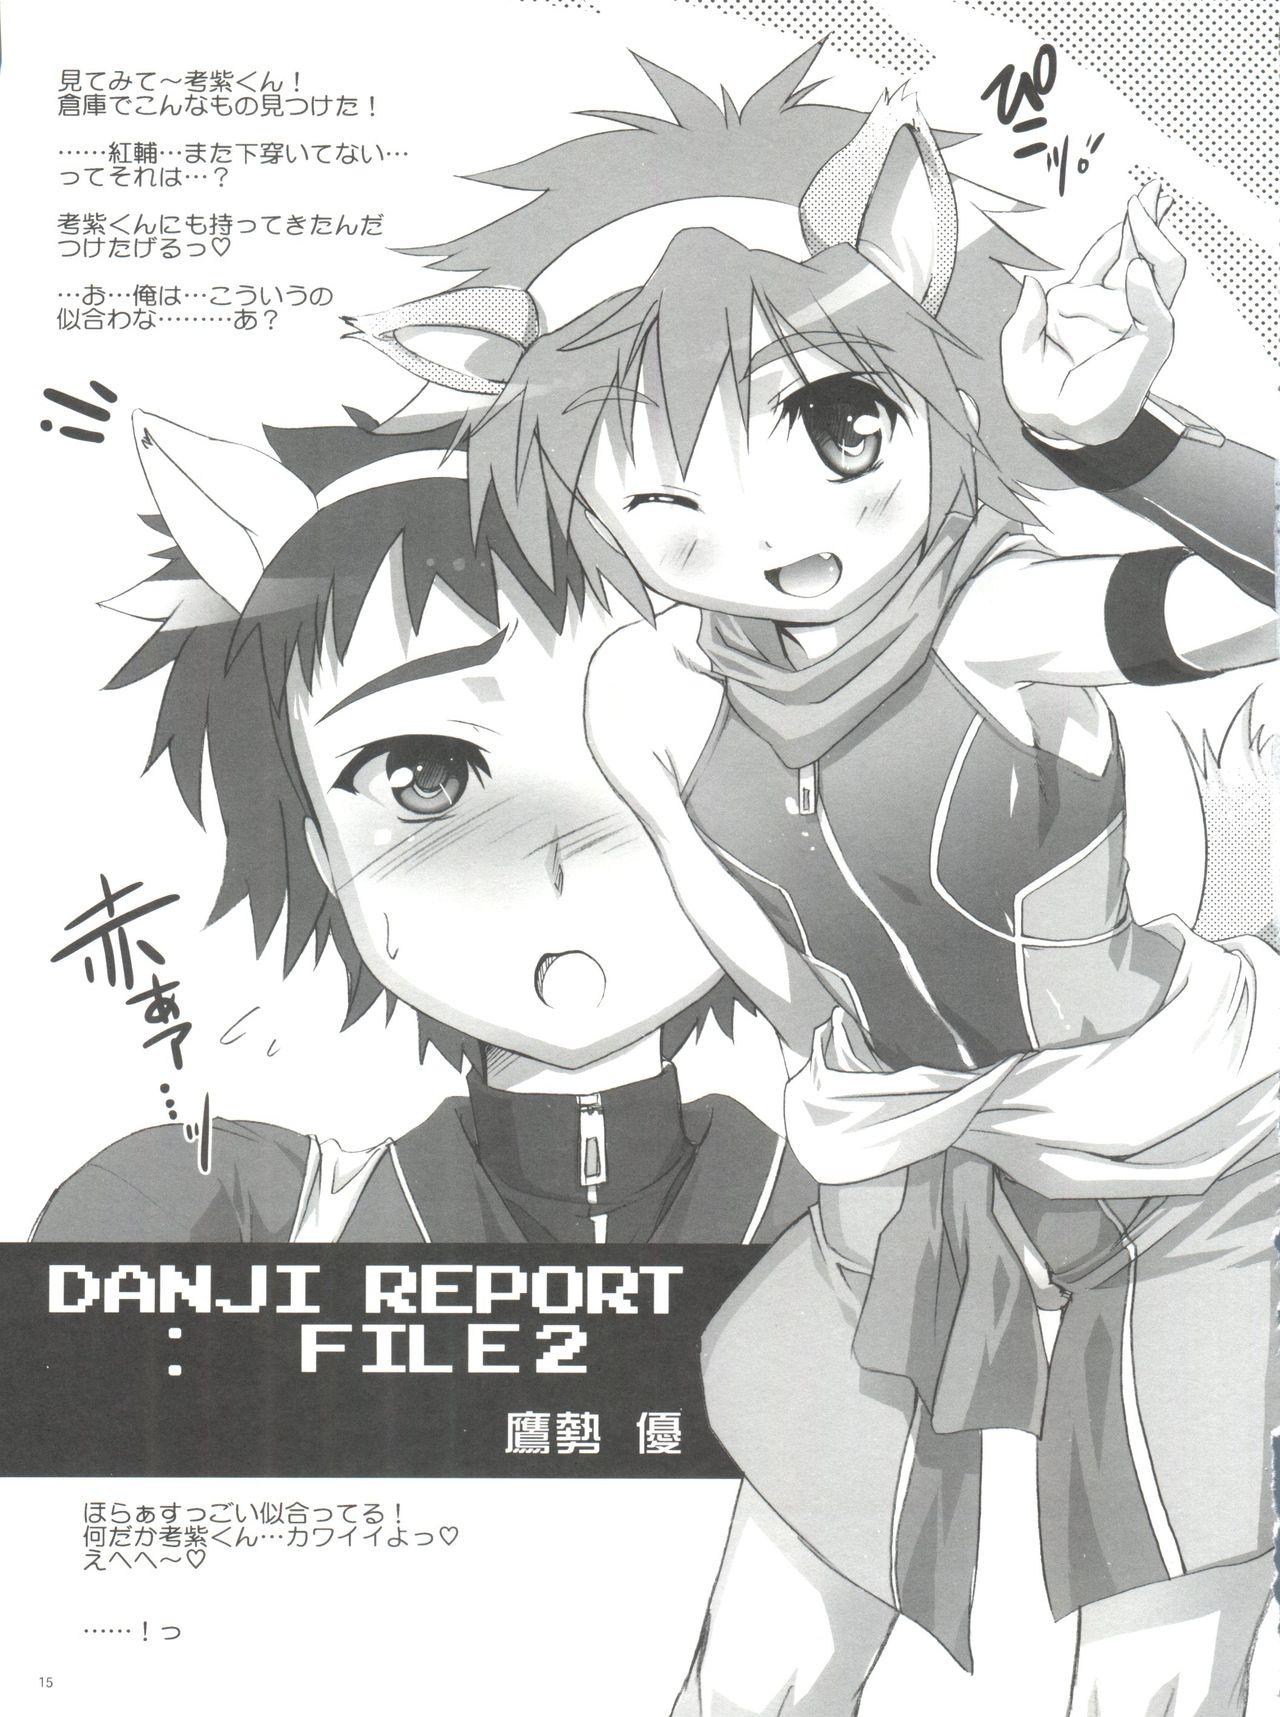 Danji Report: REVIEW 13